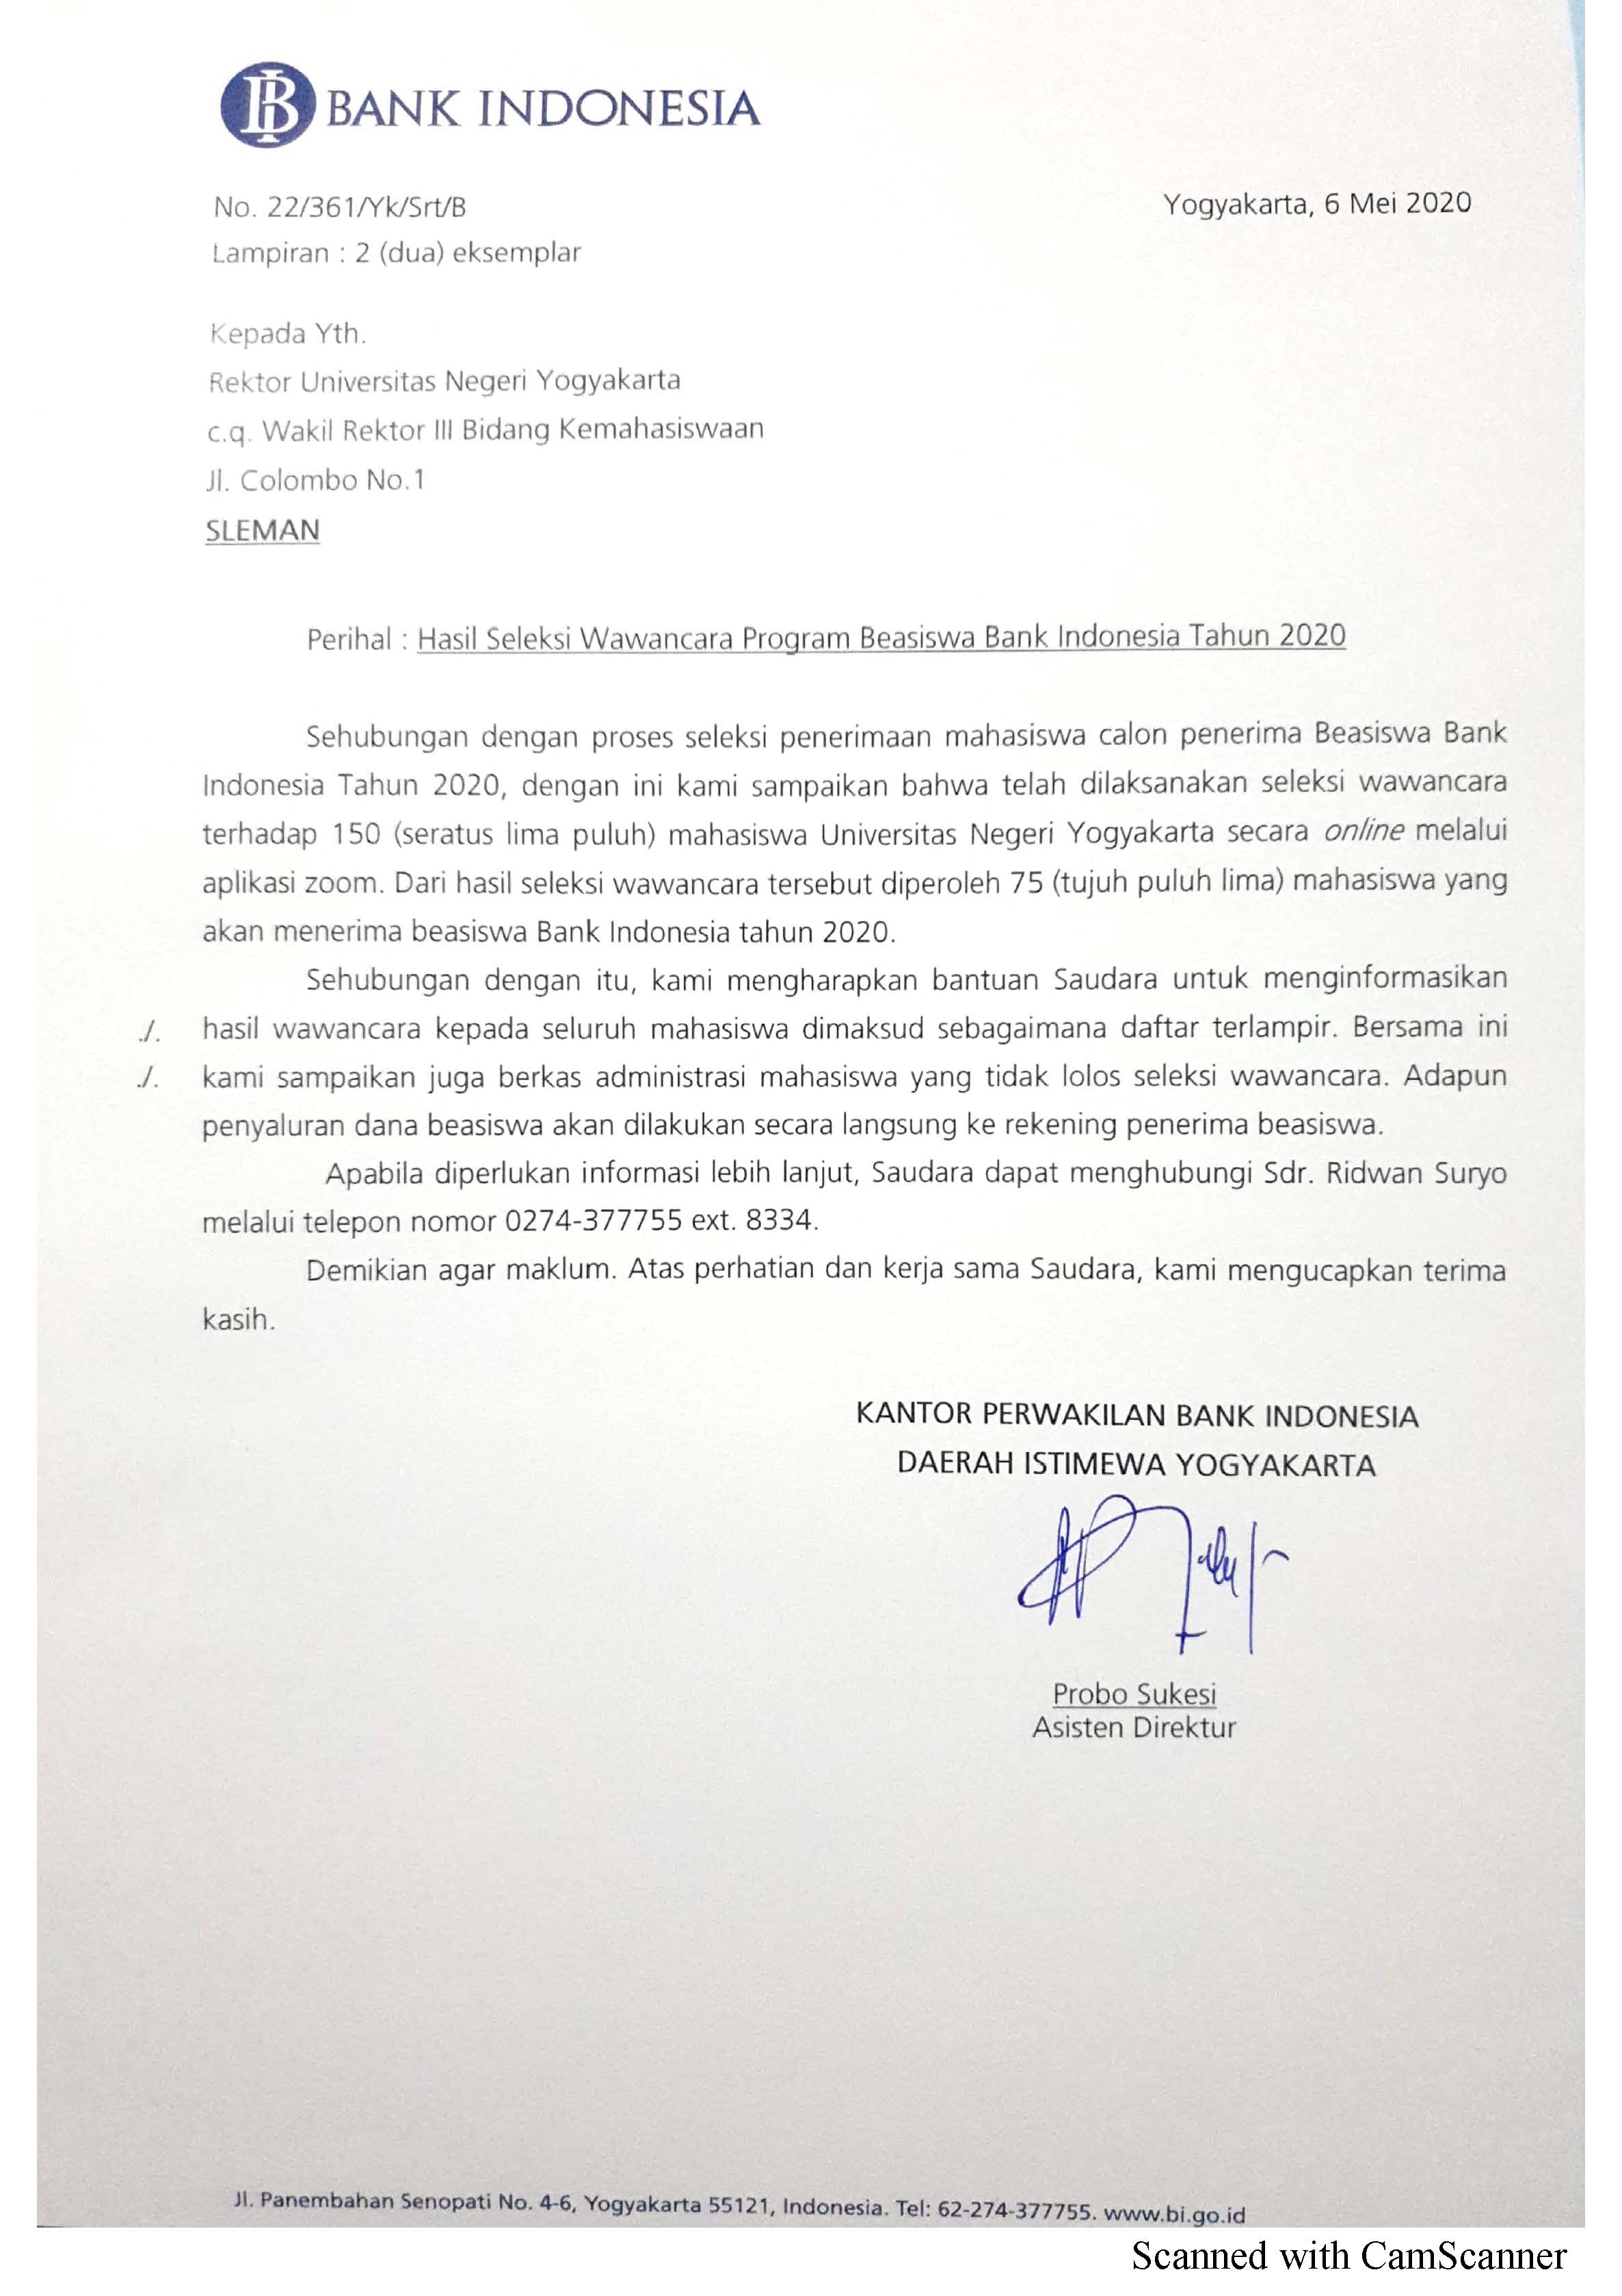 HASIL SELEKSI WAWANCARA PROGRAM BEASISWA BANK INDONESIA TAHUN 2020